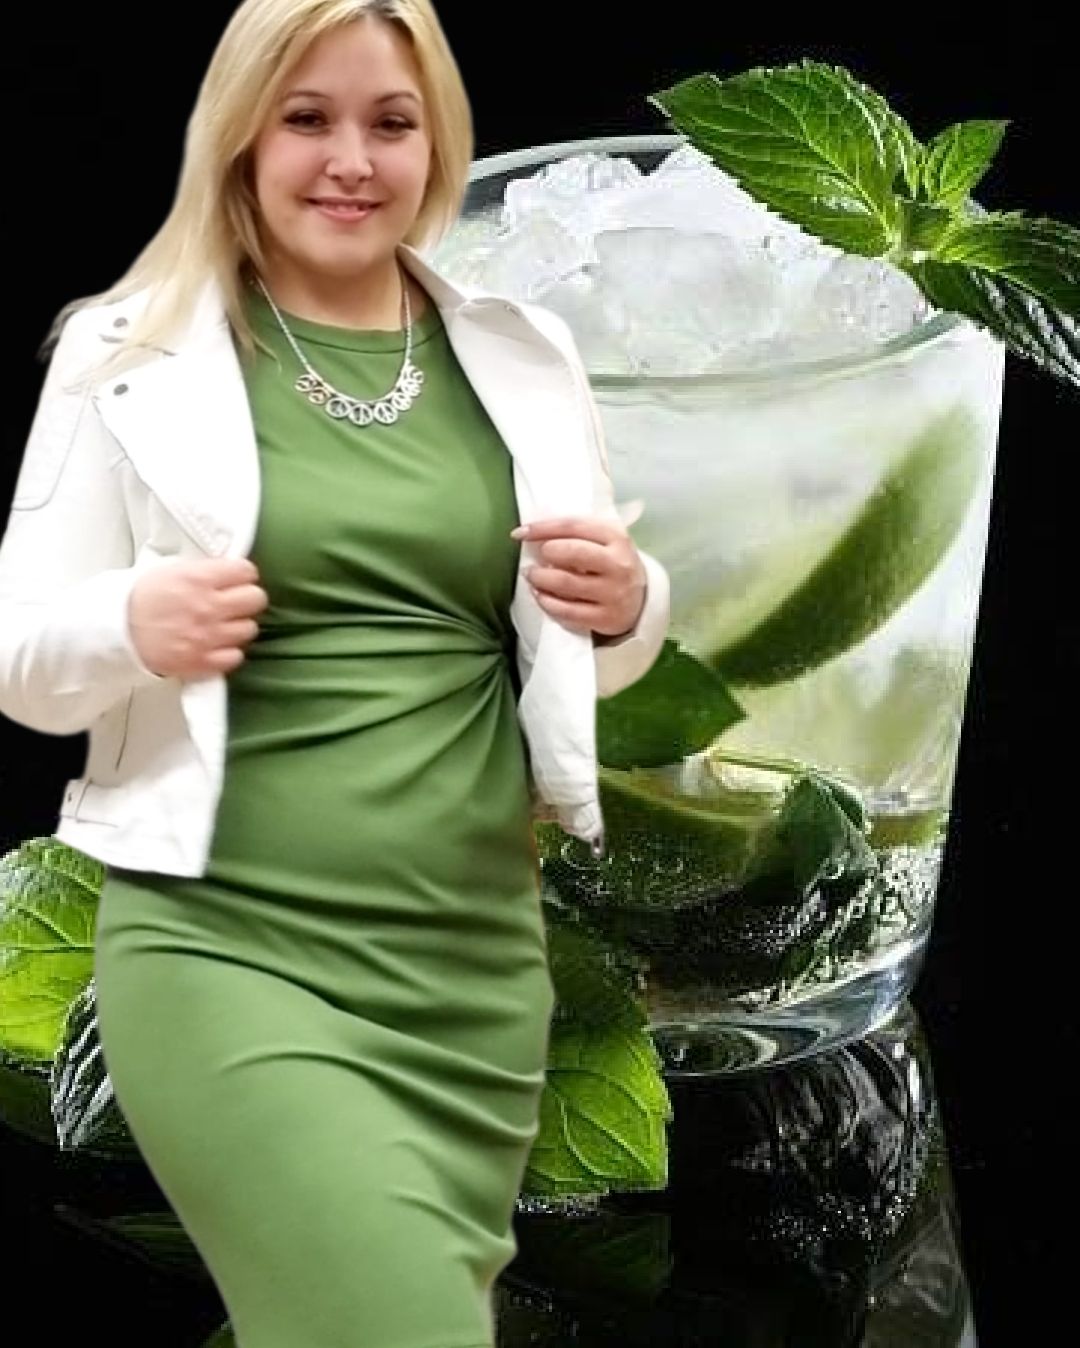 Frau in grünen Kleid mit heller Jacke und einer Halskette. Im Hintergrund eine Cocktail mit Eiswürfel und Minze.